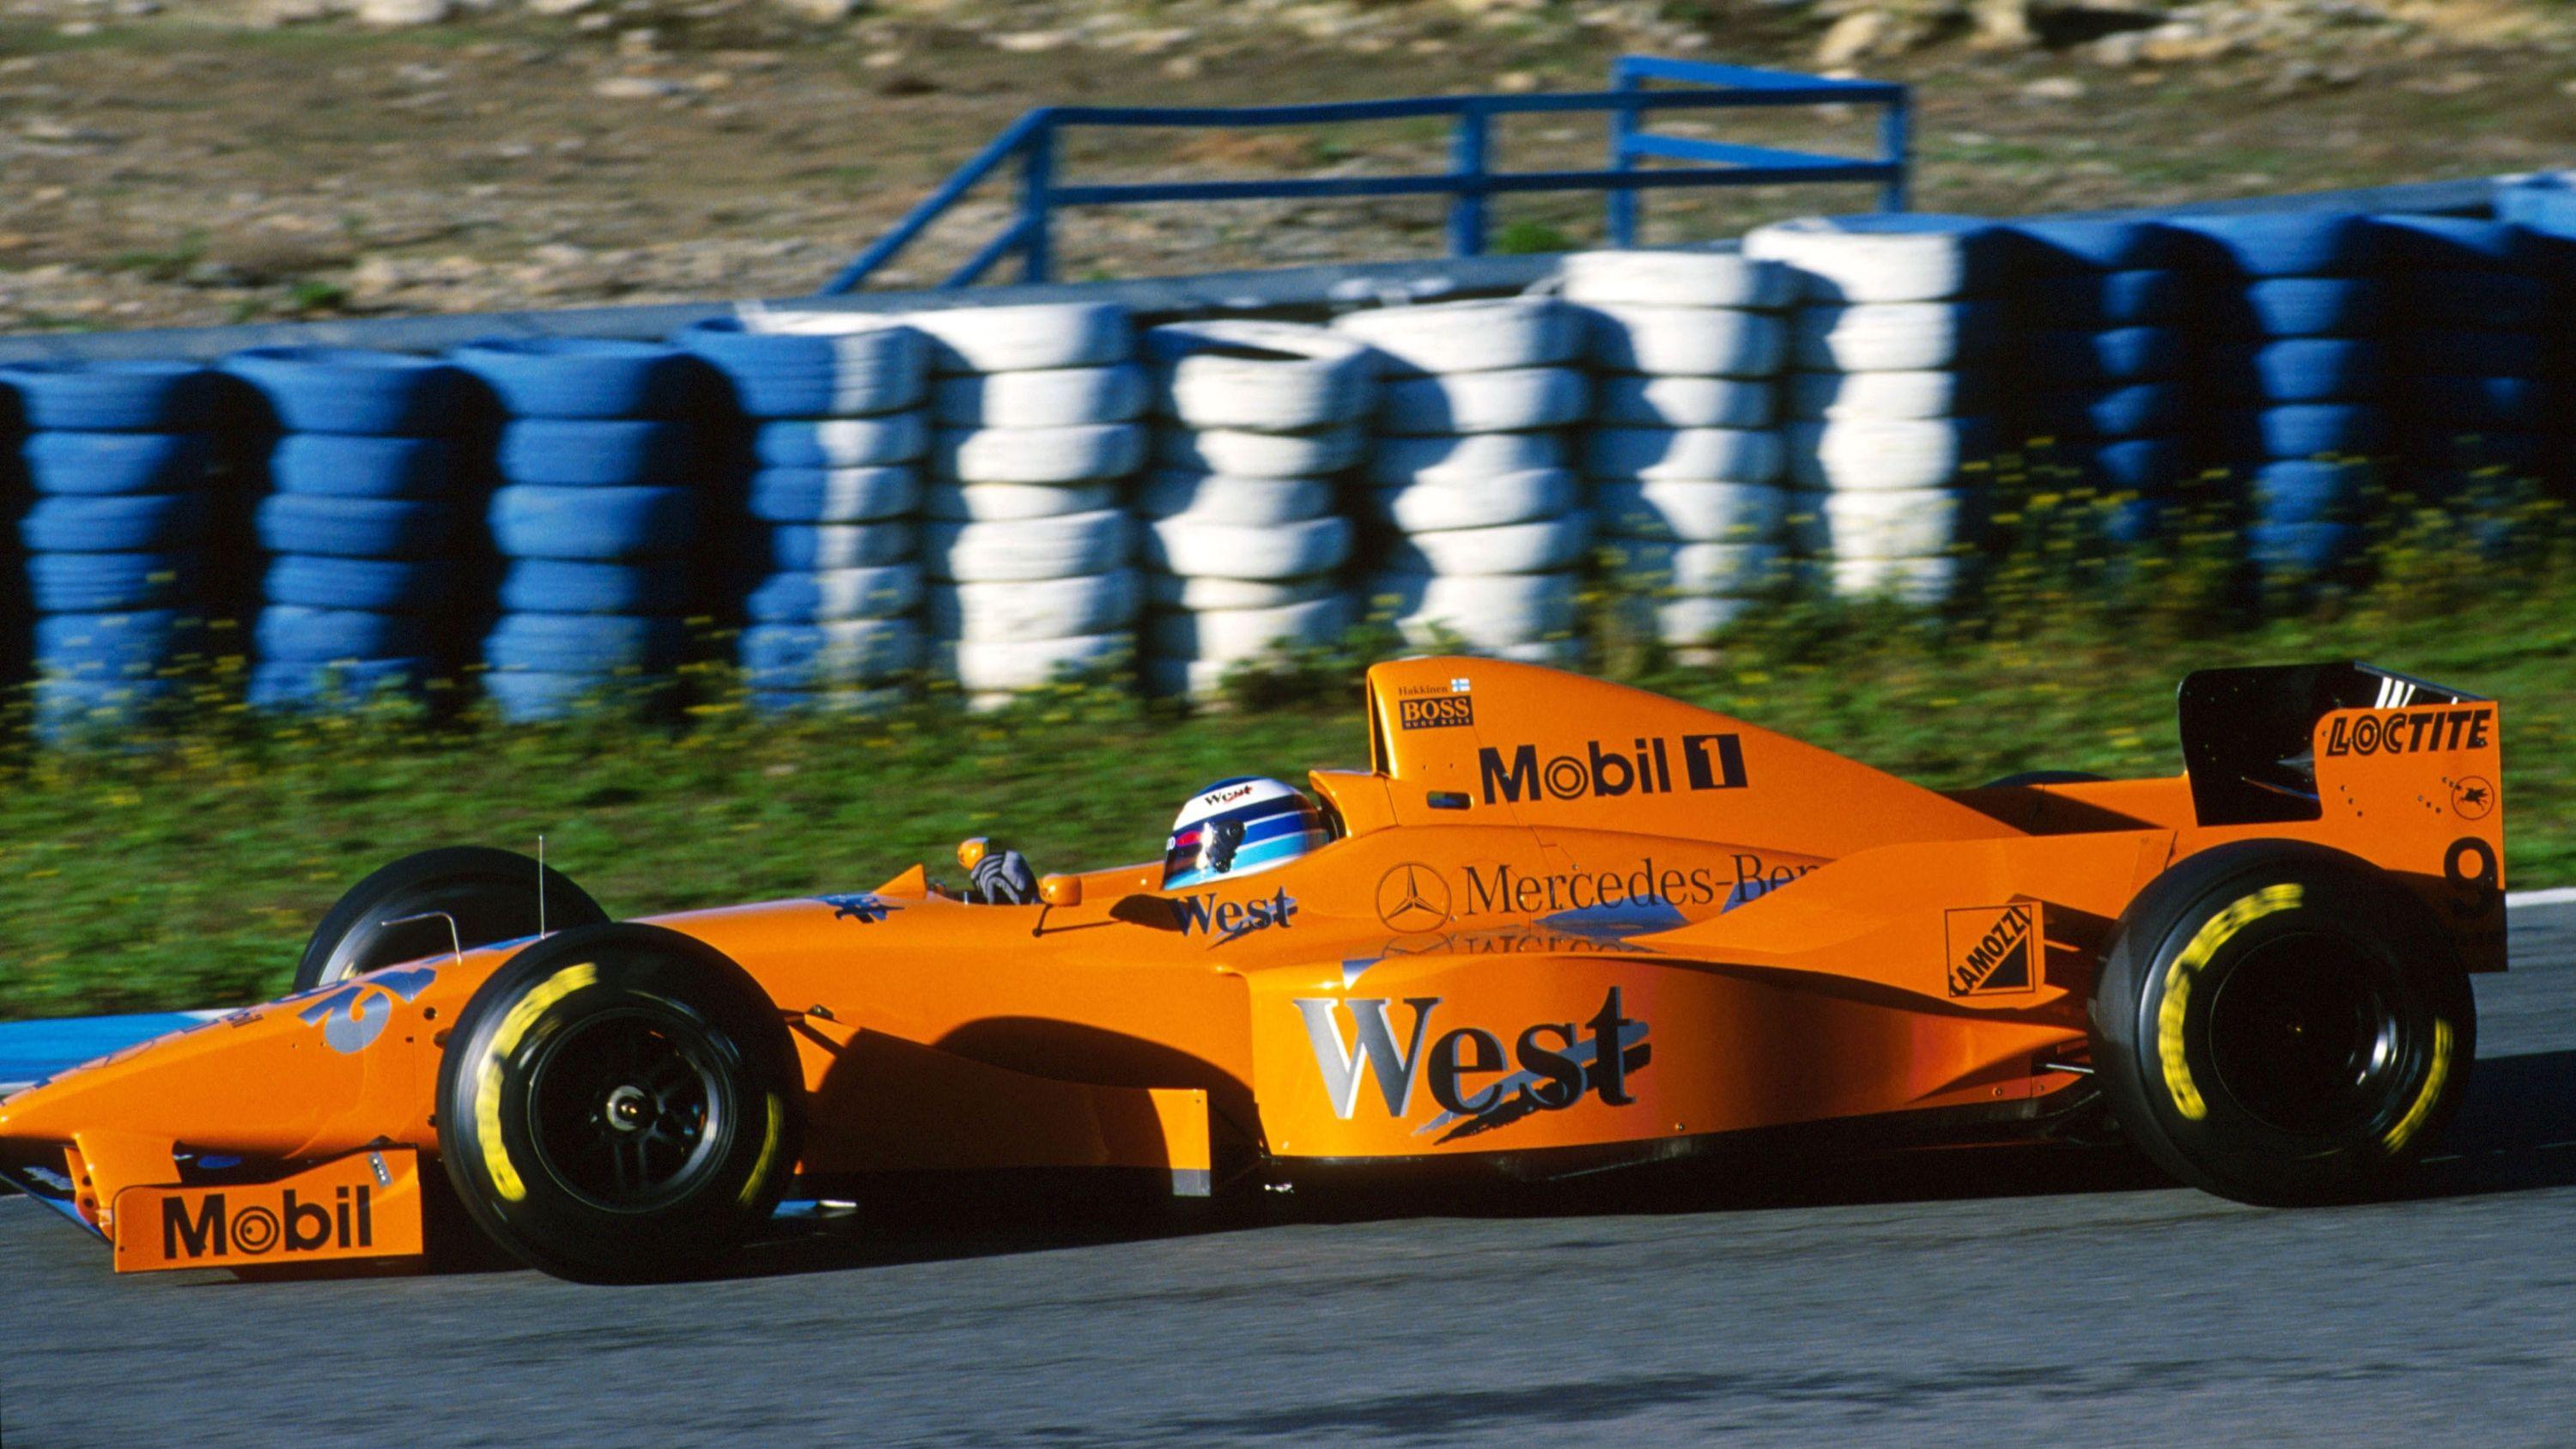 Orange McLaren F1 Logo - The orange MP4/12. How an orange McLaren should be done. : formula1